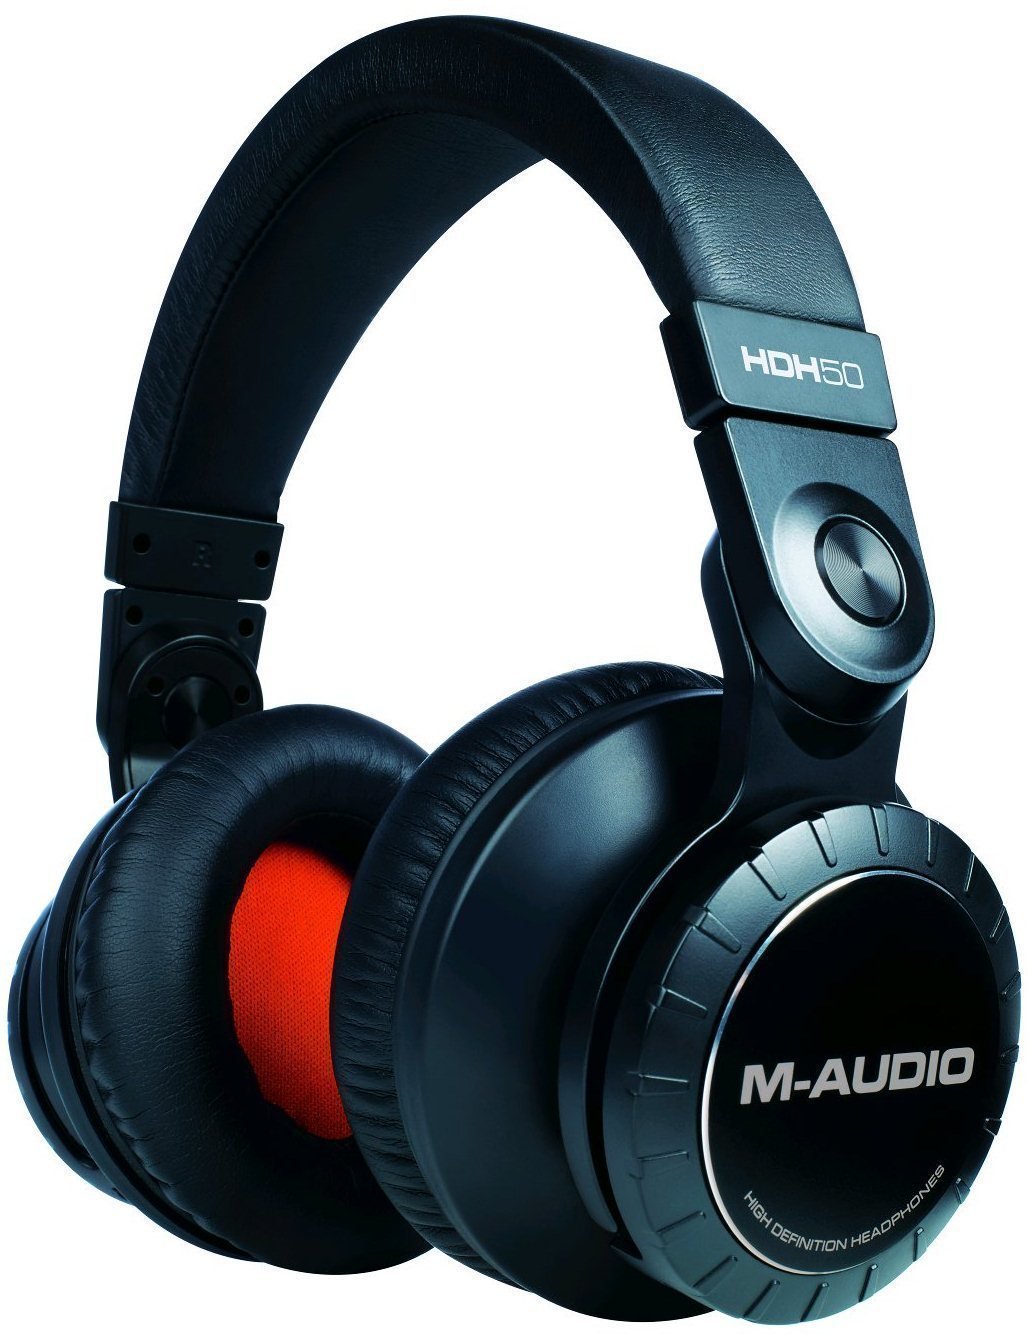 Studio Headphones M-Audio HDH50 High Definition Headphones